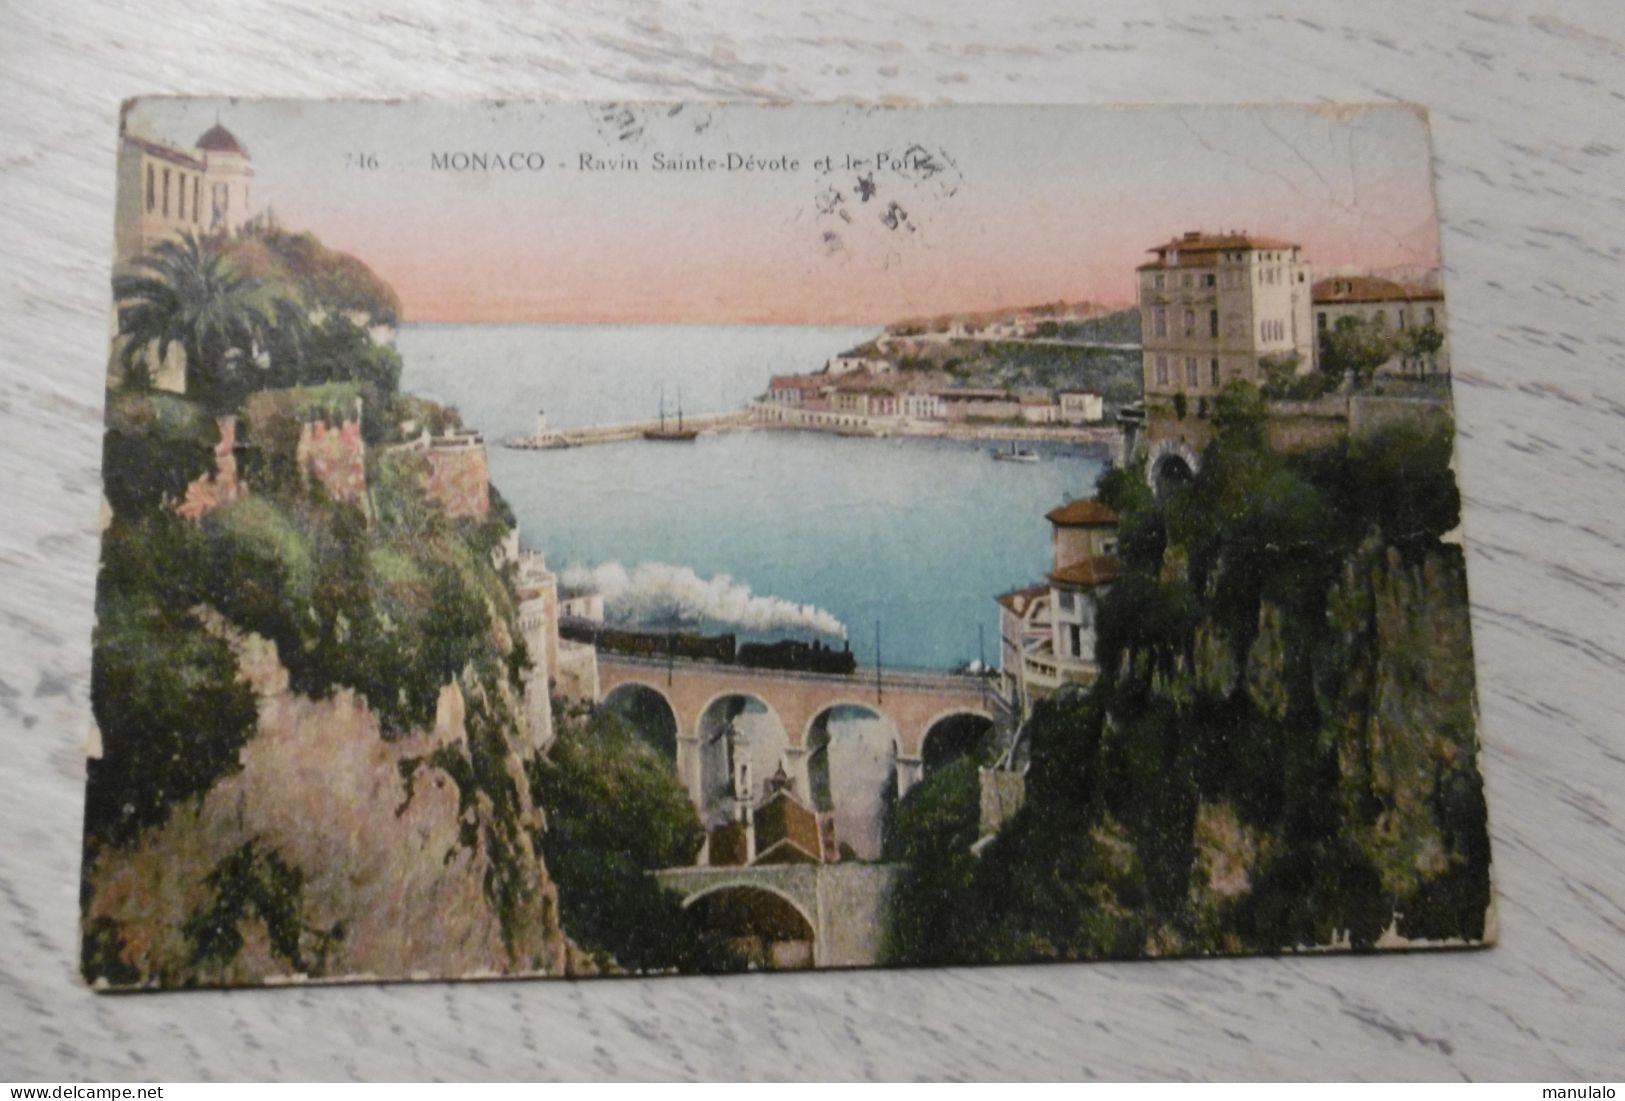 Monaco - Ravin Sainte Dévote Et Le Port - Harbor